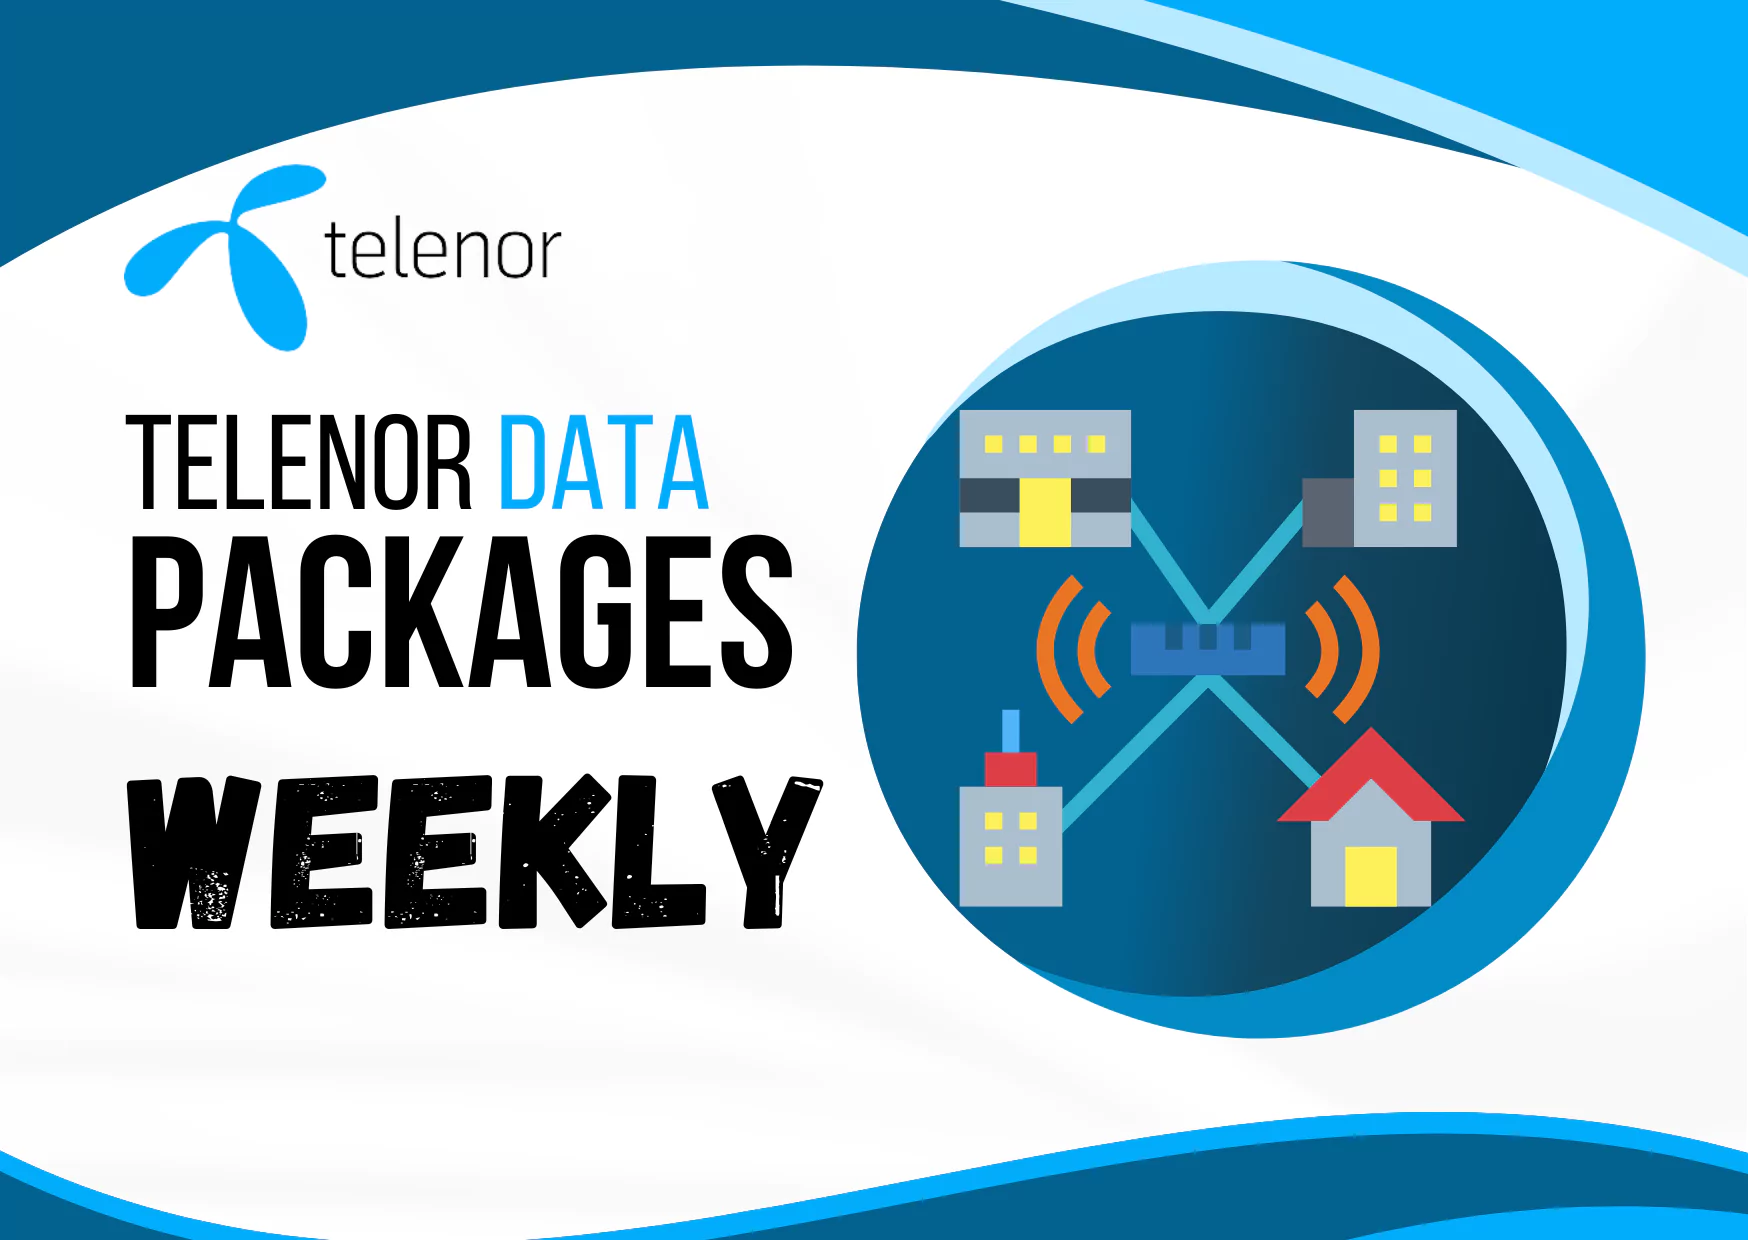 telenor internet packages weekly code 100 rupees